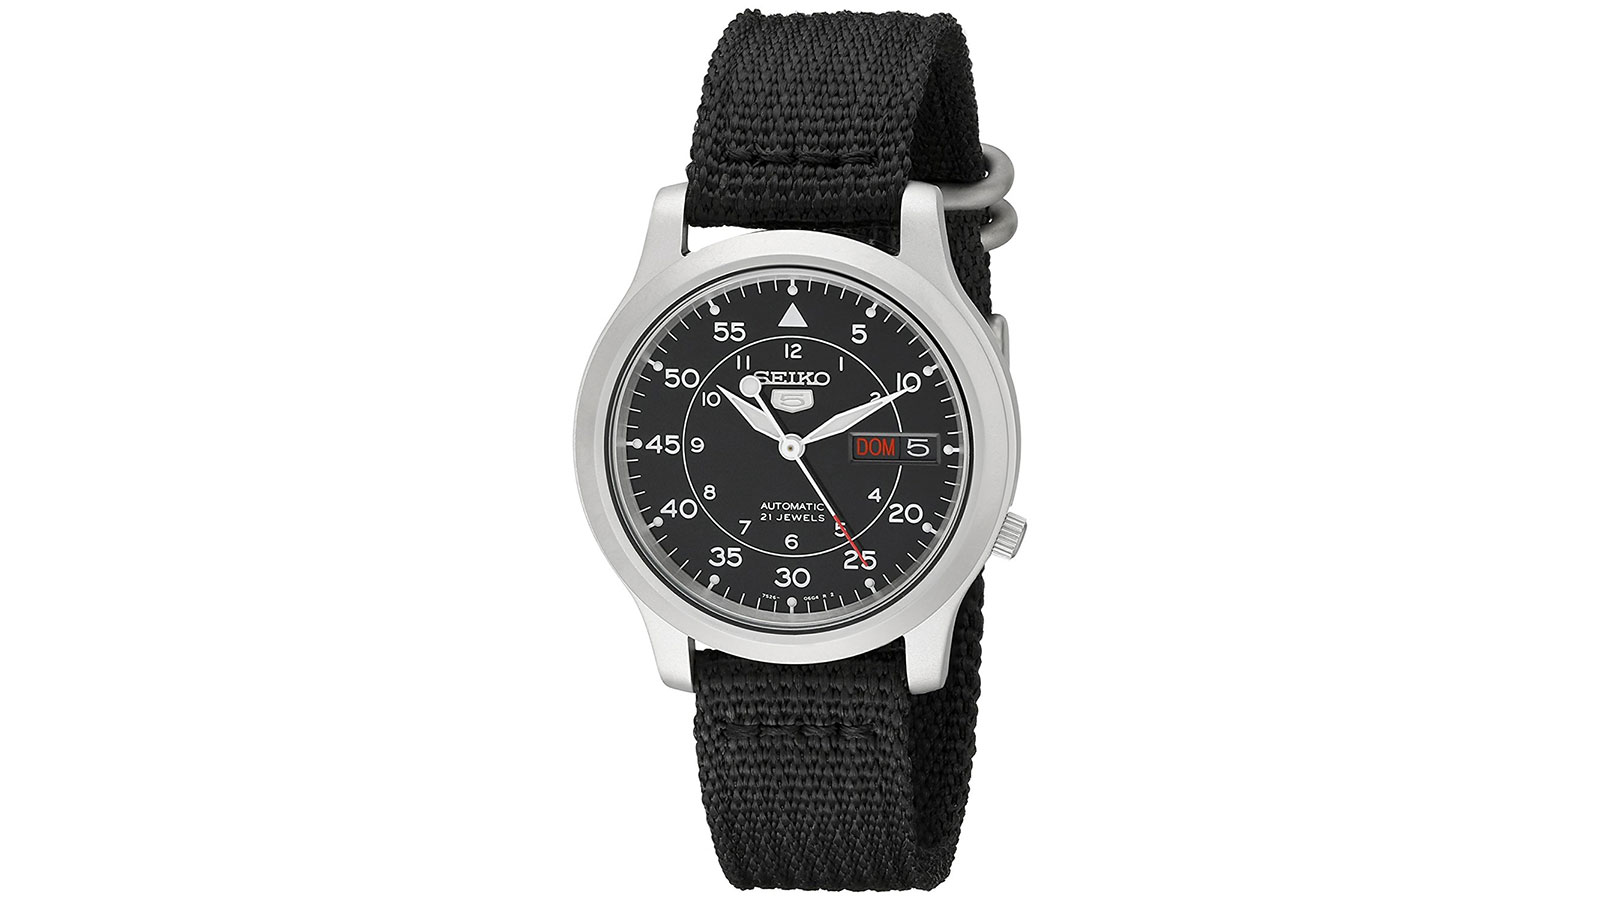 Seiko Men's SNK809 Watch | best men's watches under $100